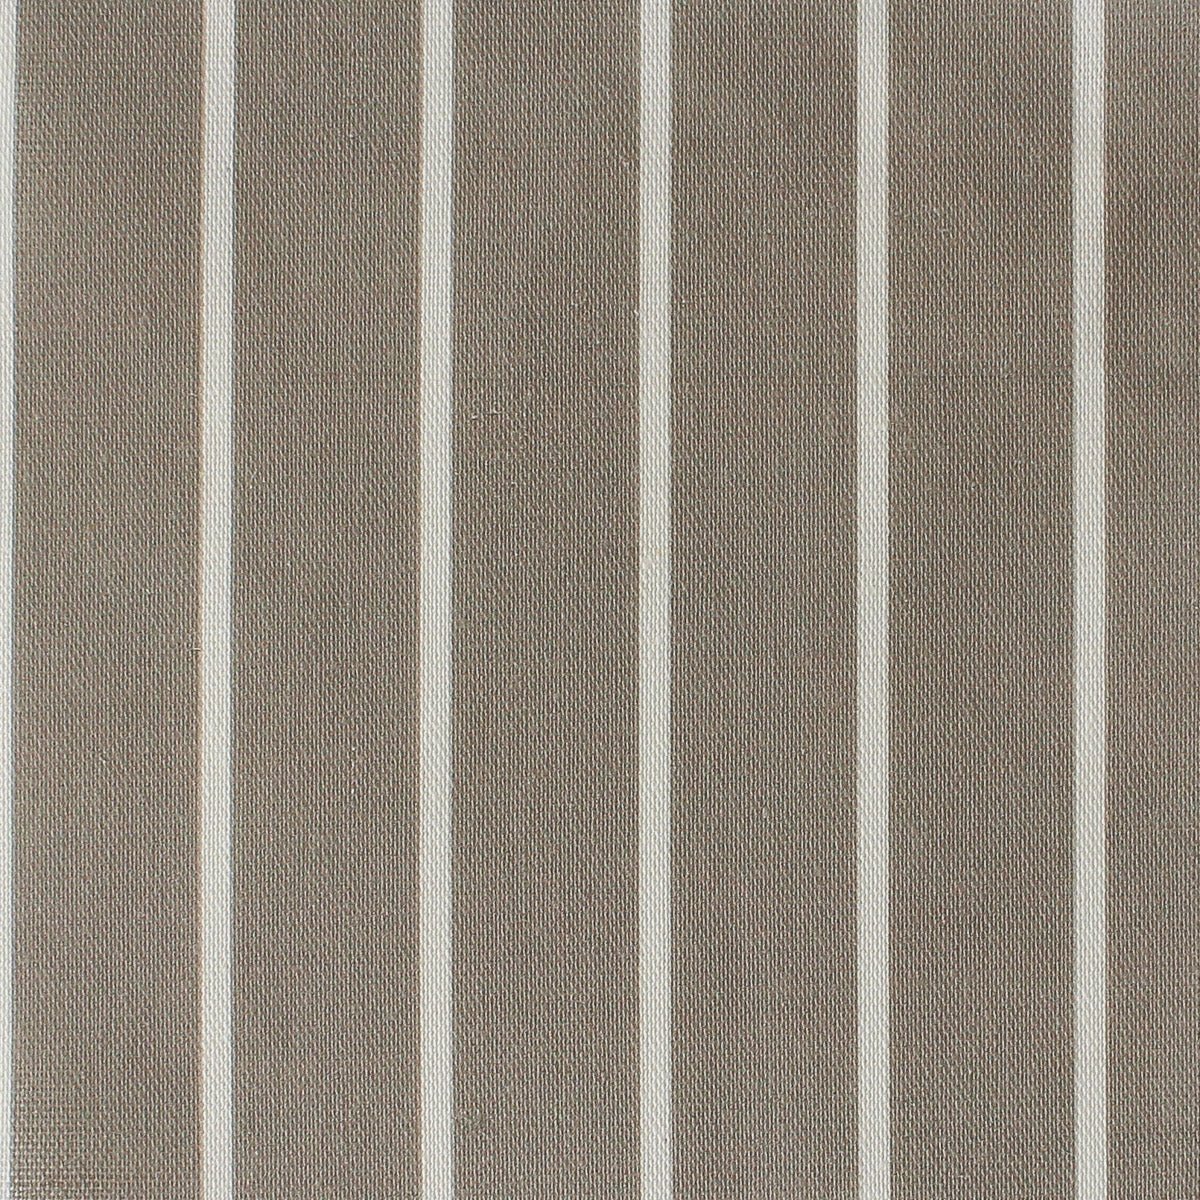 Breton Stripe Reverse Fabric - Chateaux - Hydrangea Lane Home